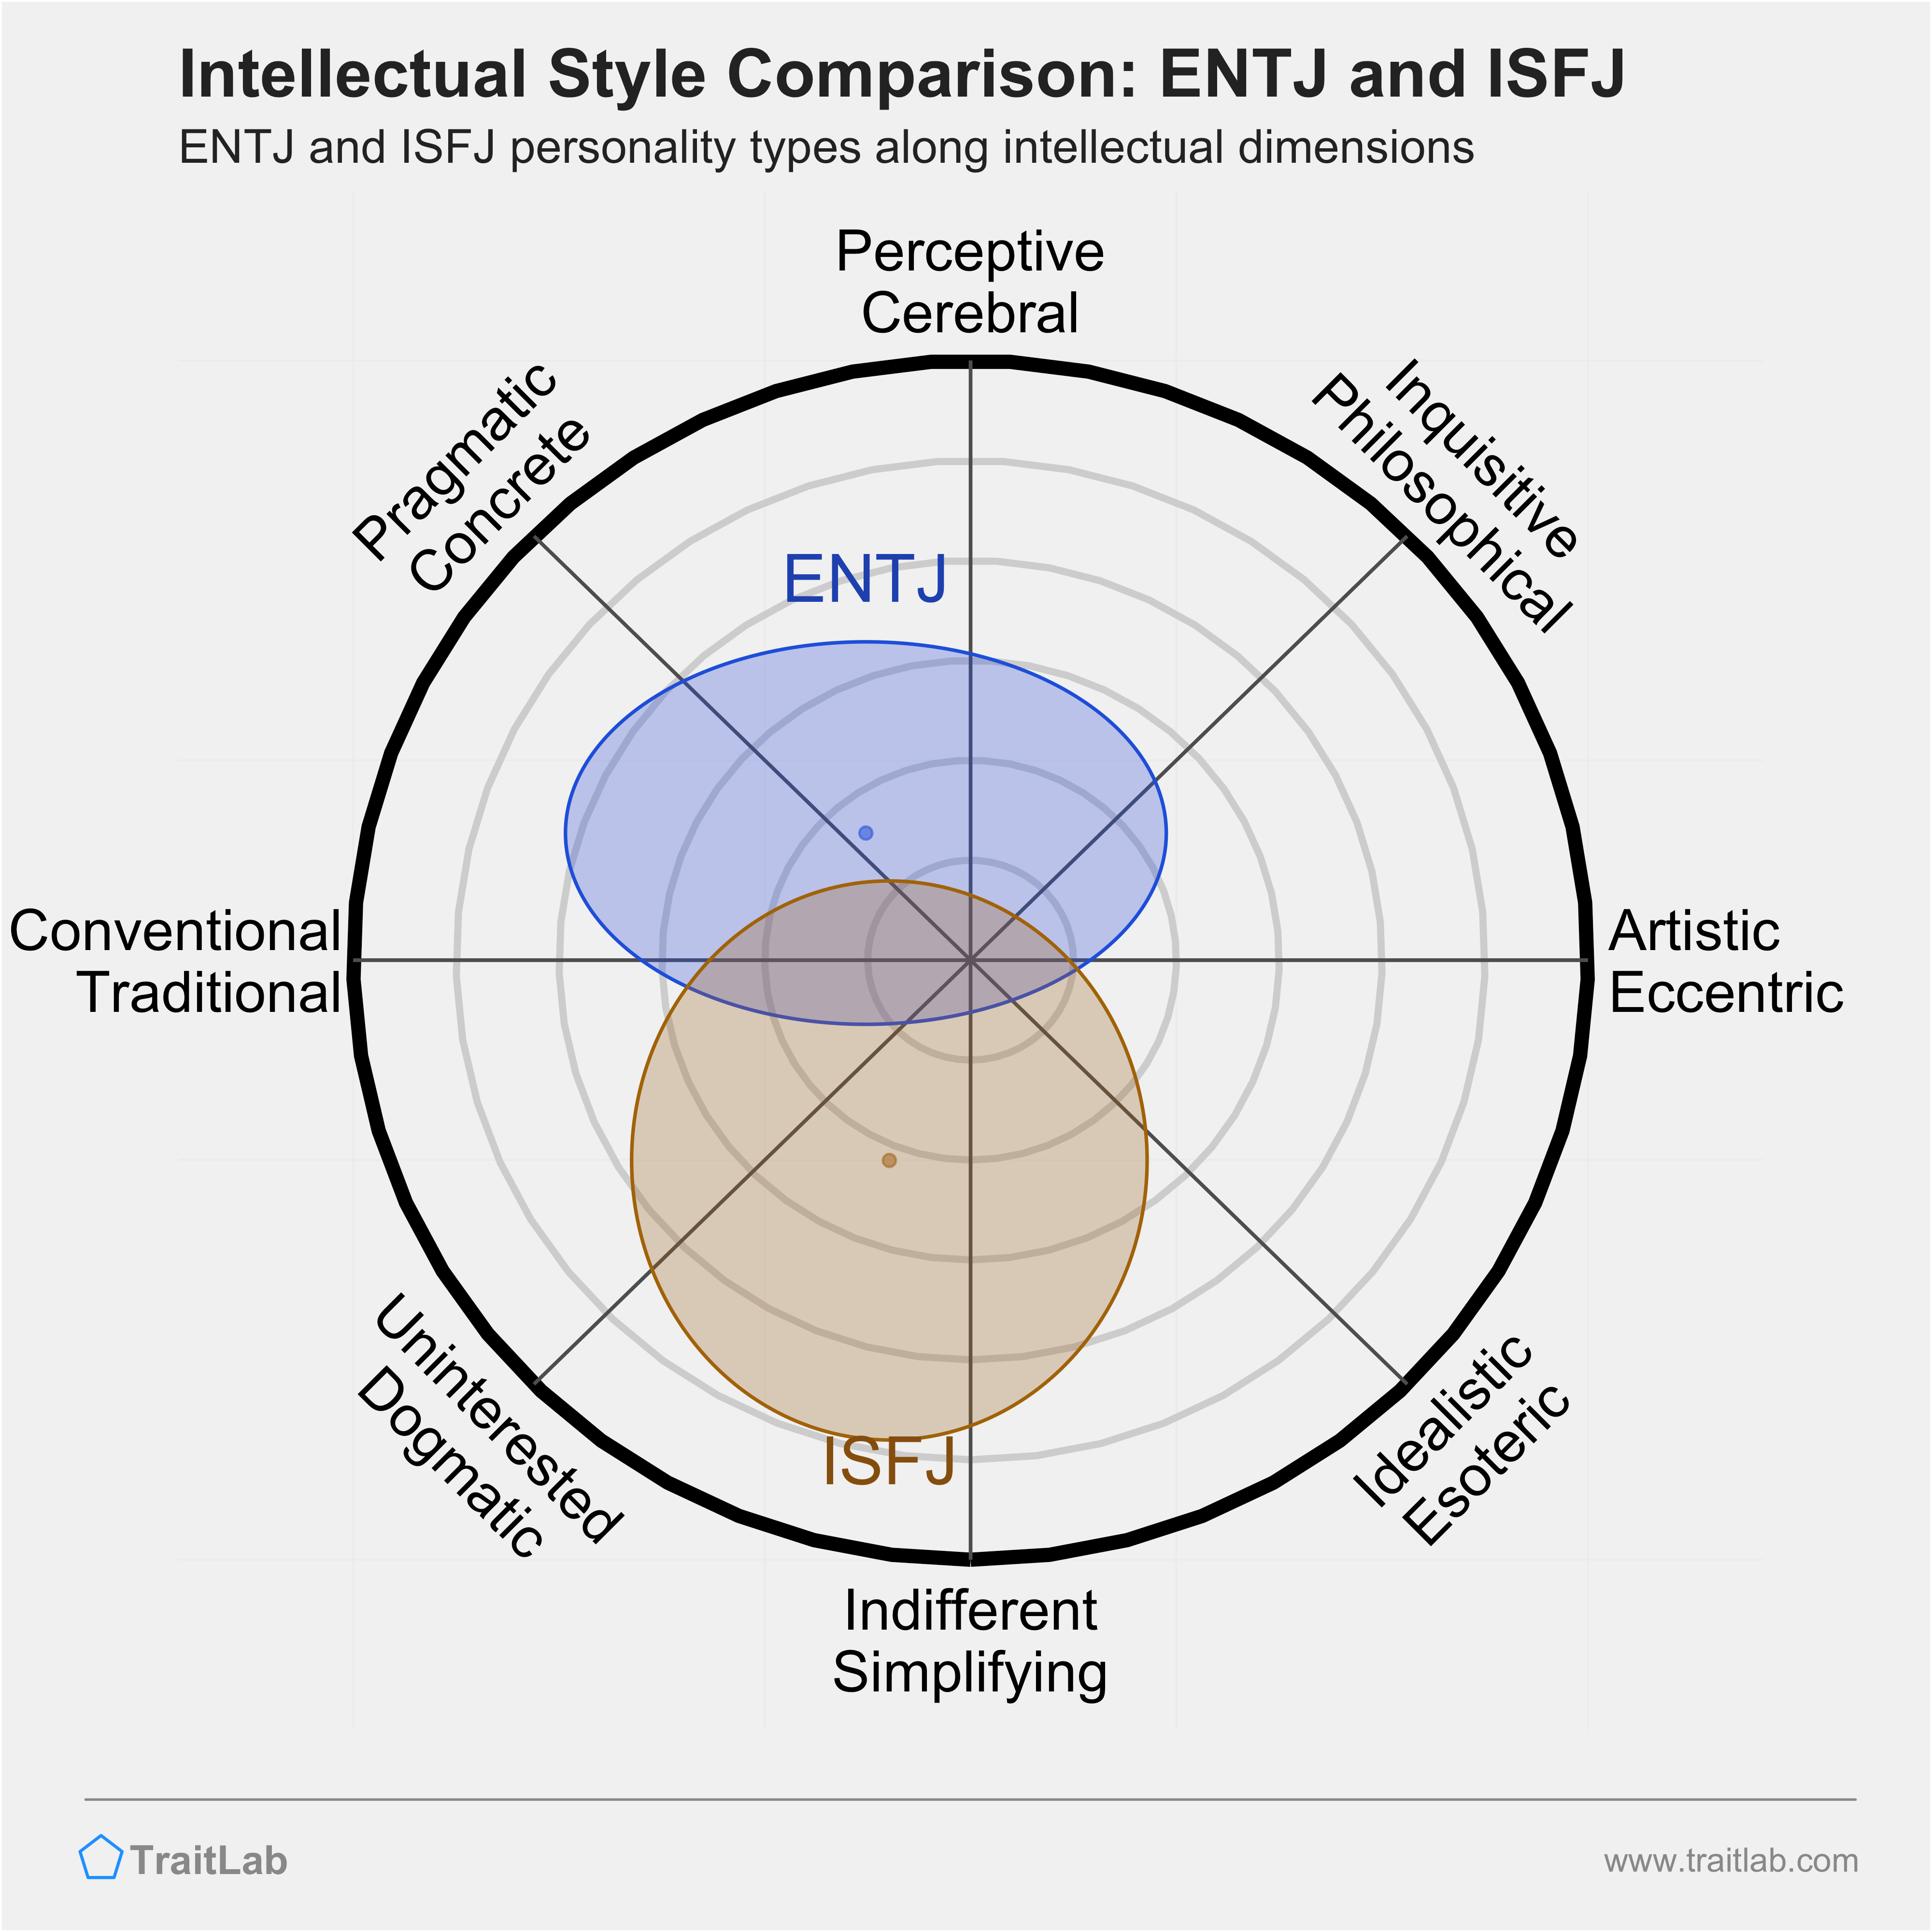 ENTJ and ISFJ comparison across intellectual dimensions